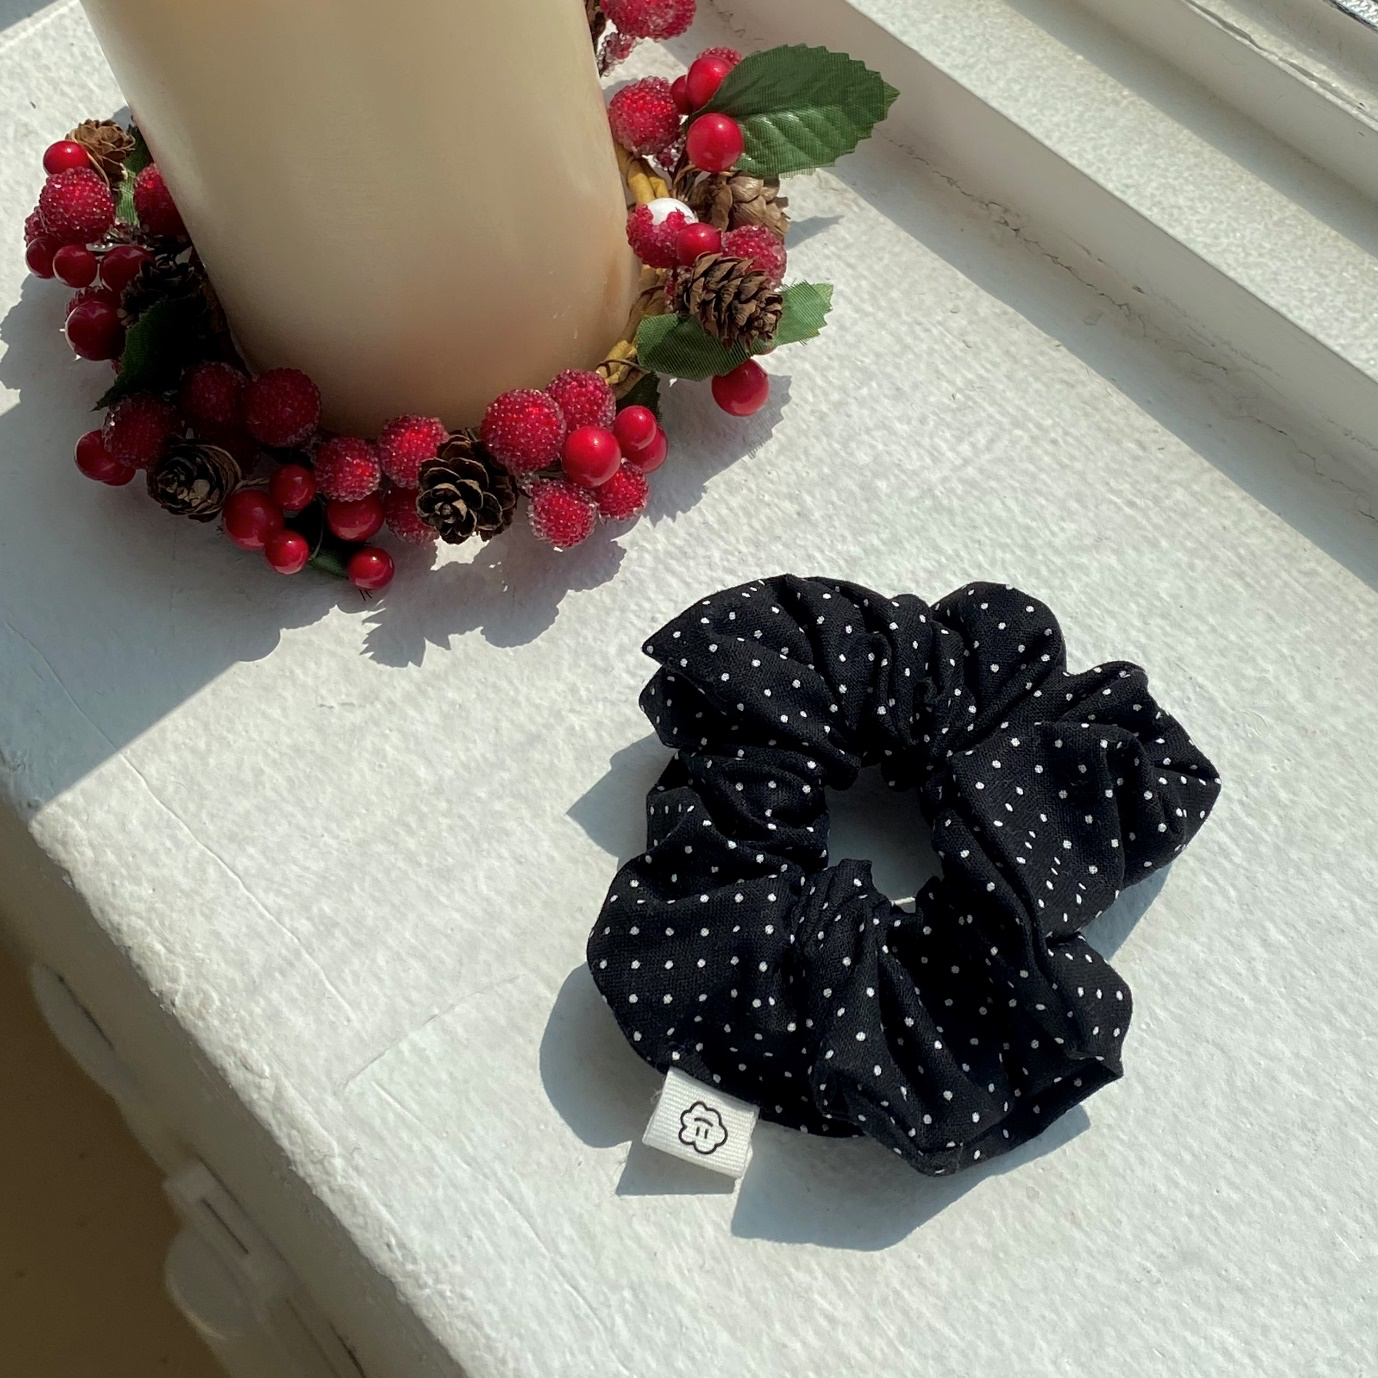 베리, 과일, 프루티 디 보스코, 꽃이(가) 표시된 사진

자동 생성된 설명